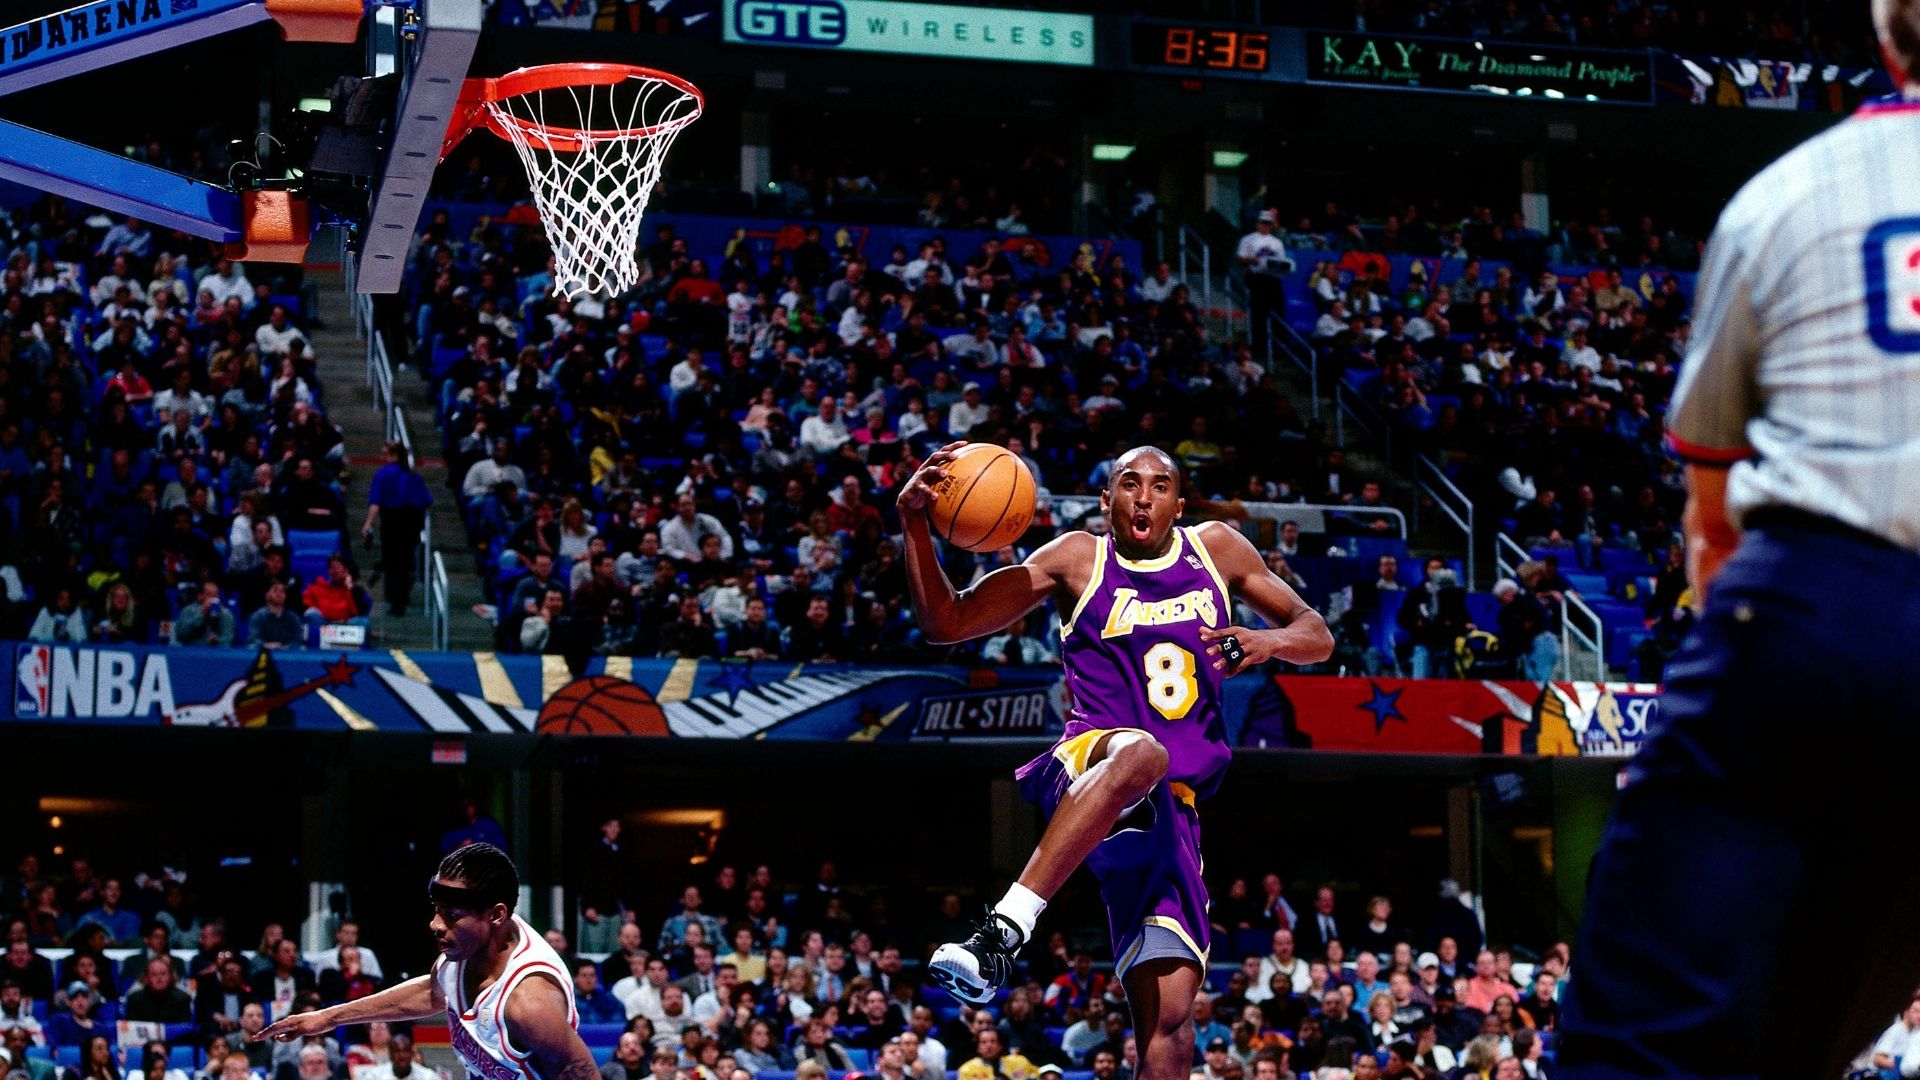 Kobe before becoming an NBA legend - ESPN Video1920 x 1080